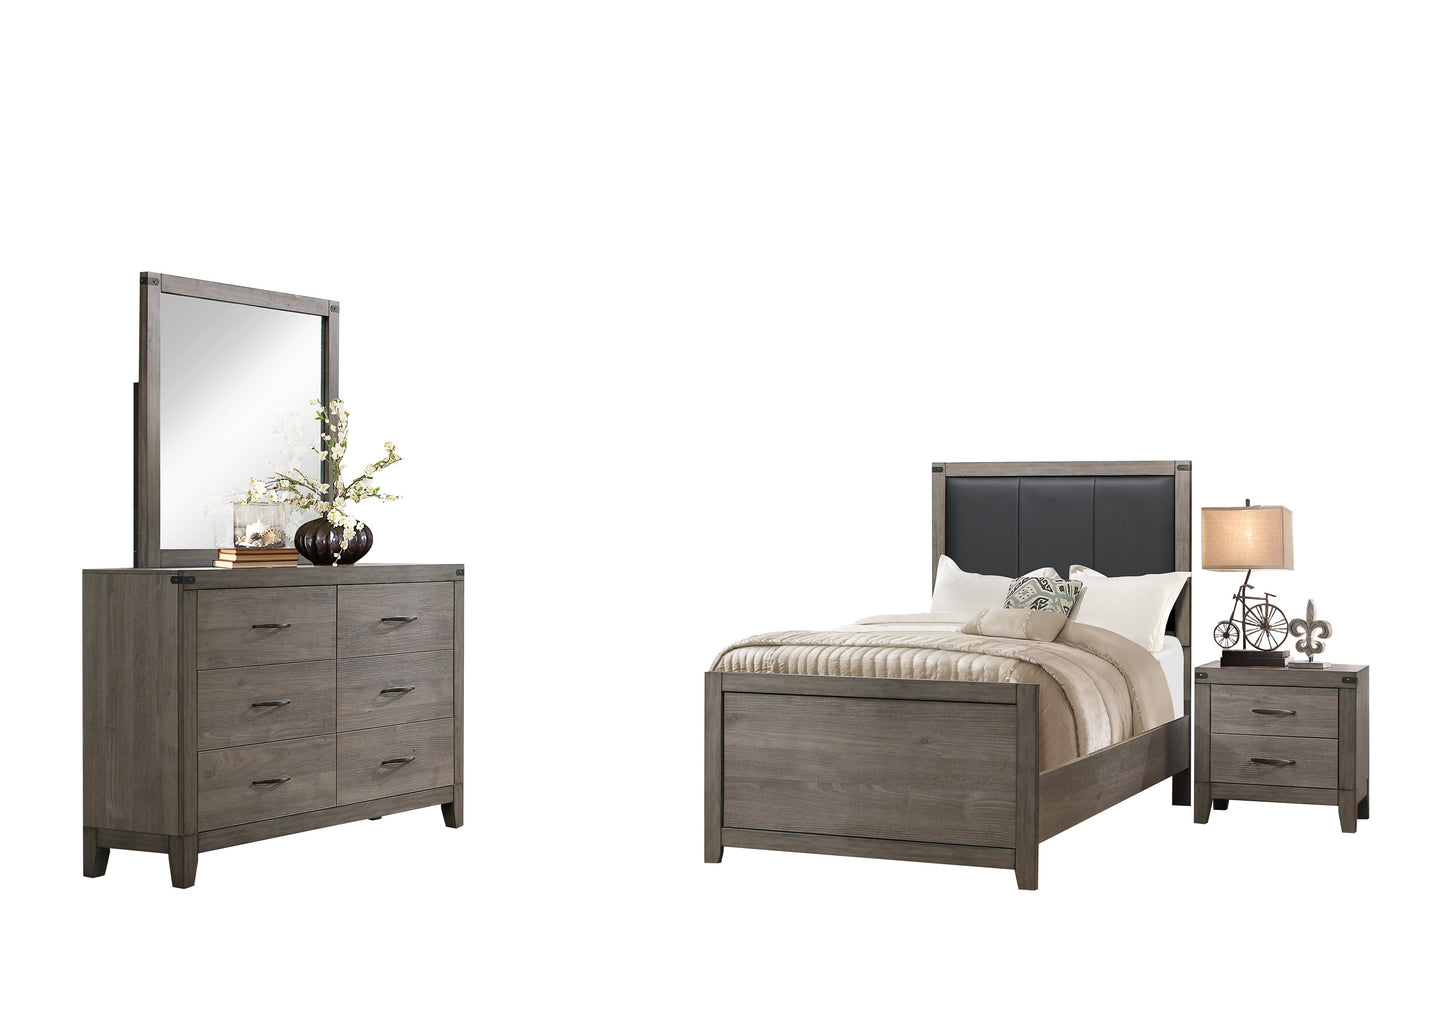 Walen Industrial 4PC Bedroom Set Full Bed, Dresser, Mirror, Nightstand in Grey